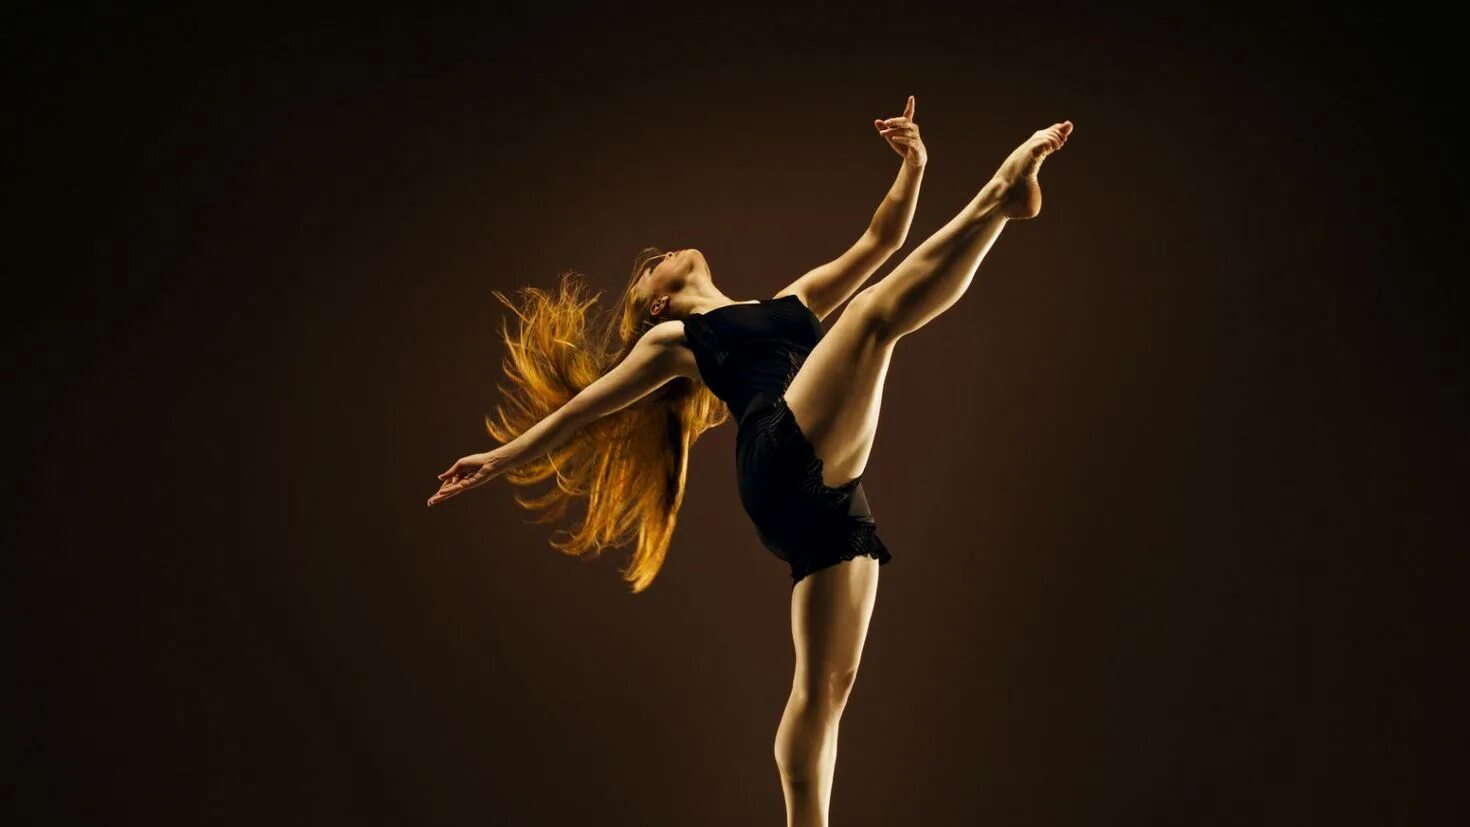 Все в движении музыка 2. Современные танцы. Танцующая девушка. Девушка в движении. Танцор Контемпорари.